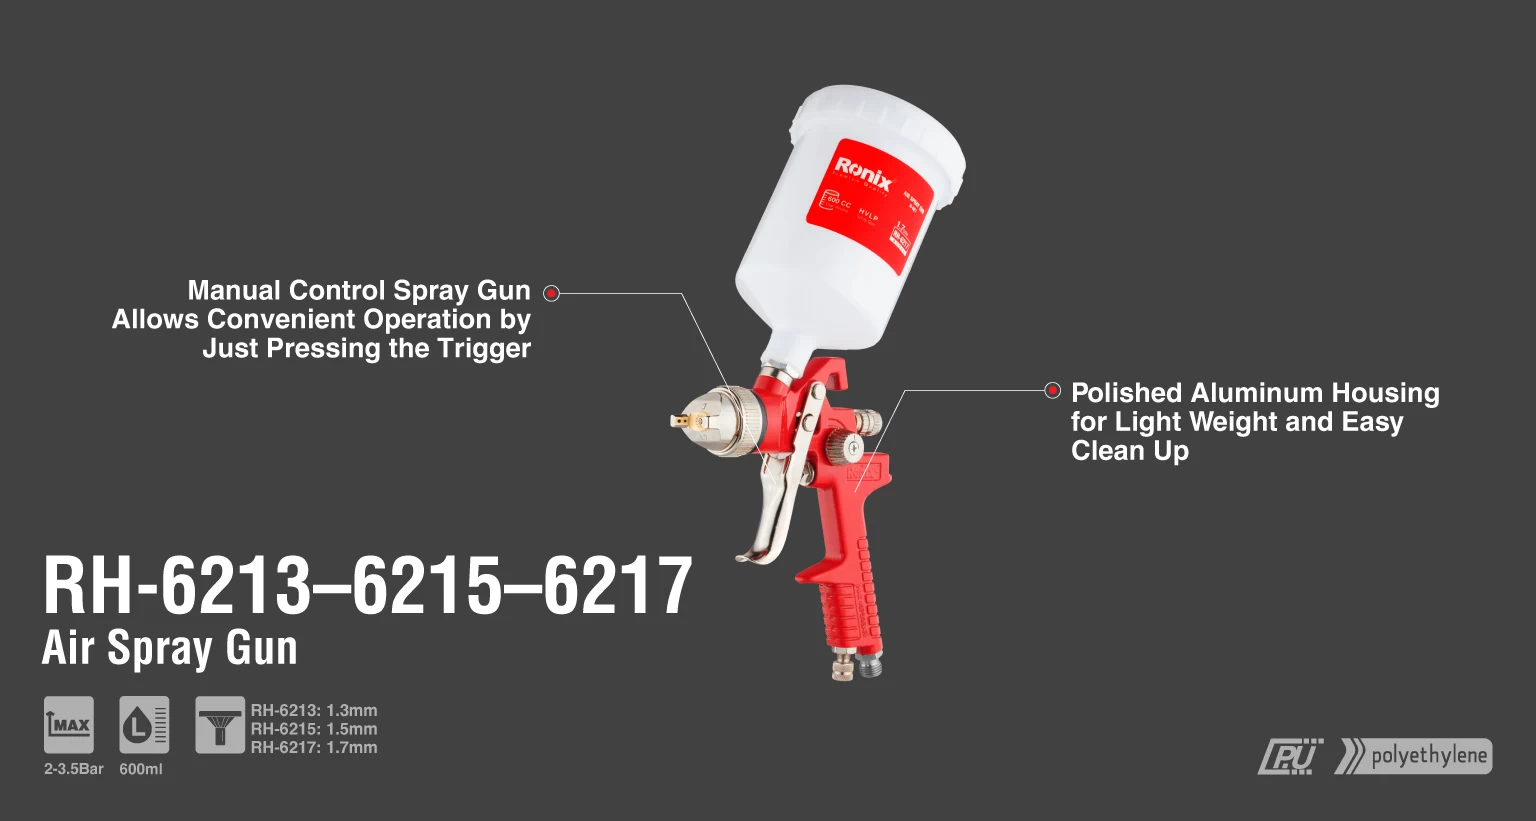 Pistola Pulverizadora de taza plástica y boquilla 1.3mm_details